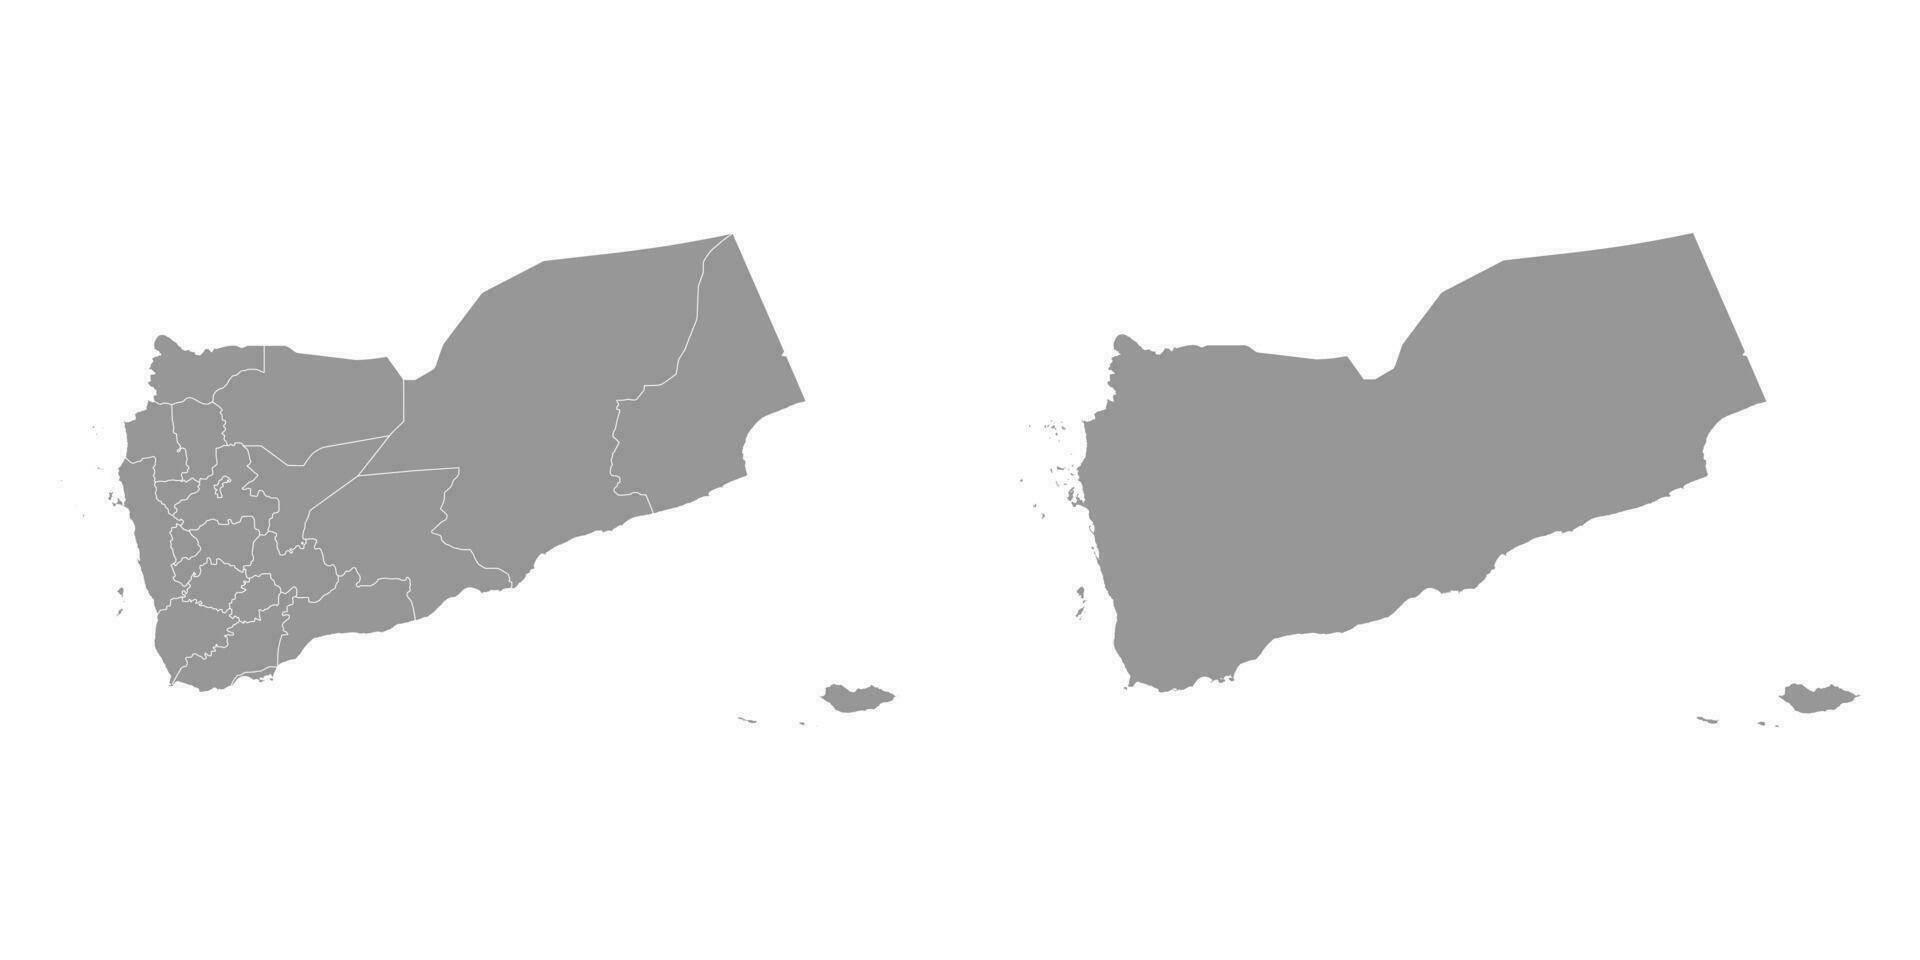 yemen grigio carta geografica con amministrativo divisioni. vettore illustrazione.